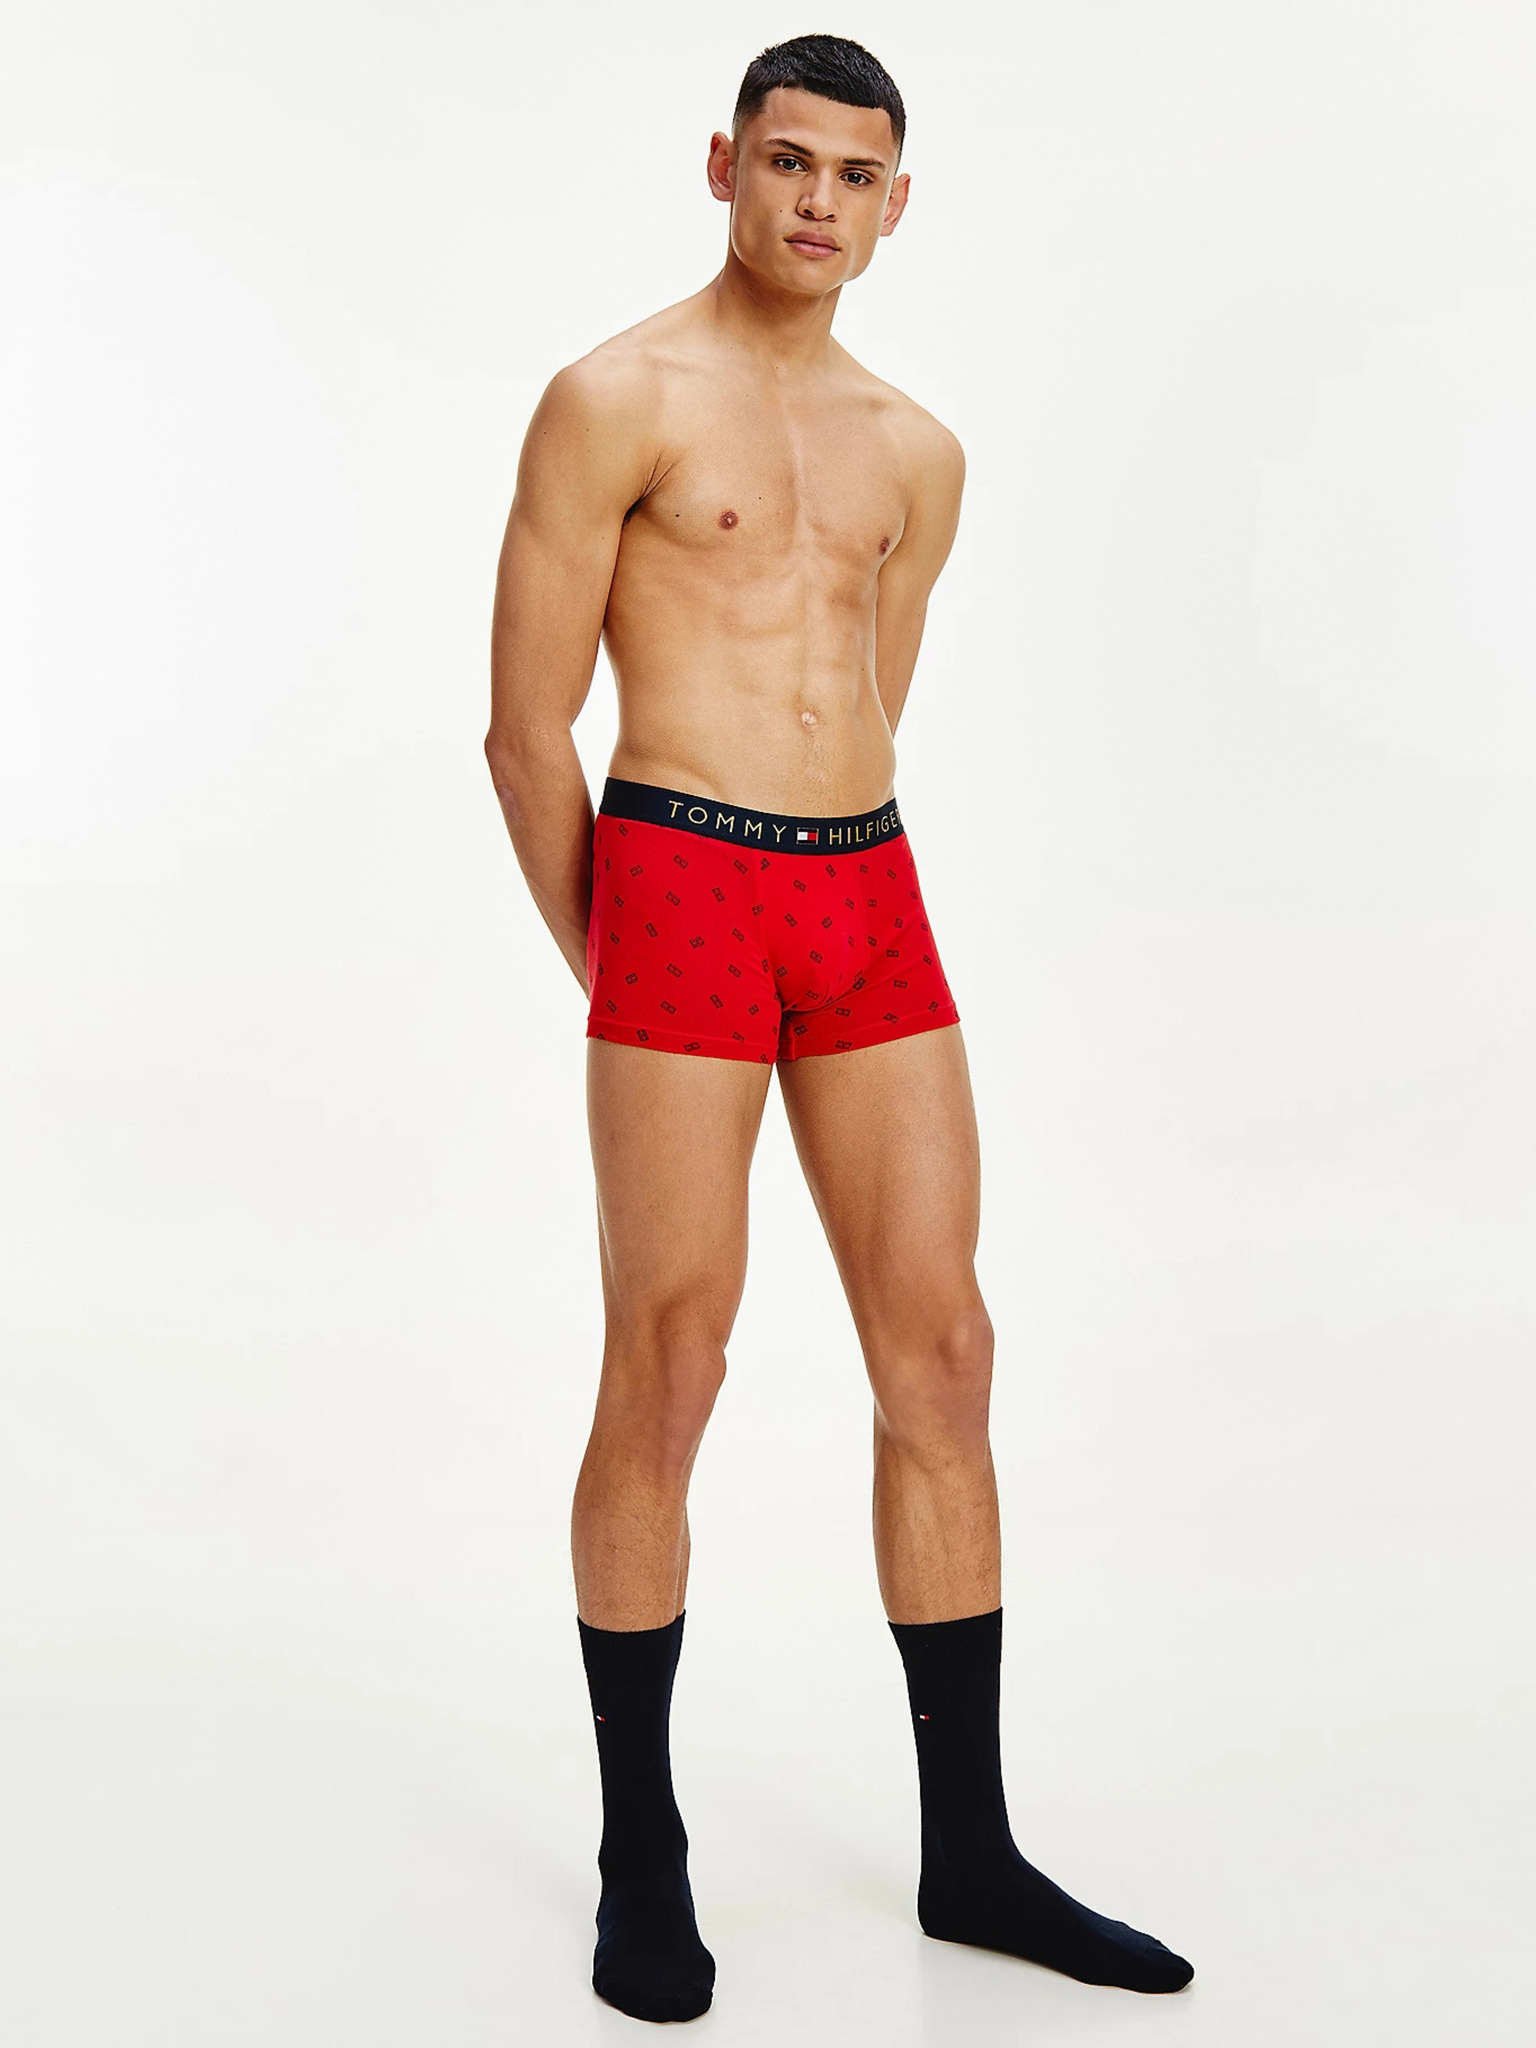 Tommy Hilfiger Boxer Brief, Men's Fashion, Bottoms, New Underwear